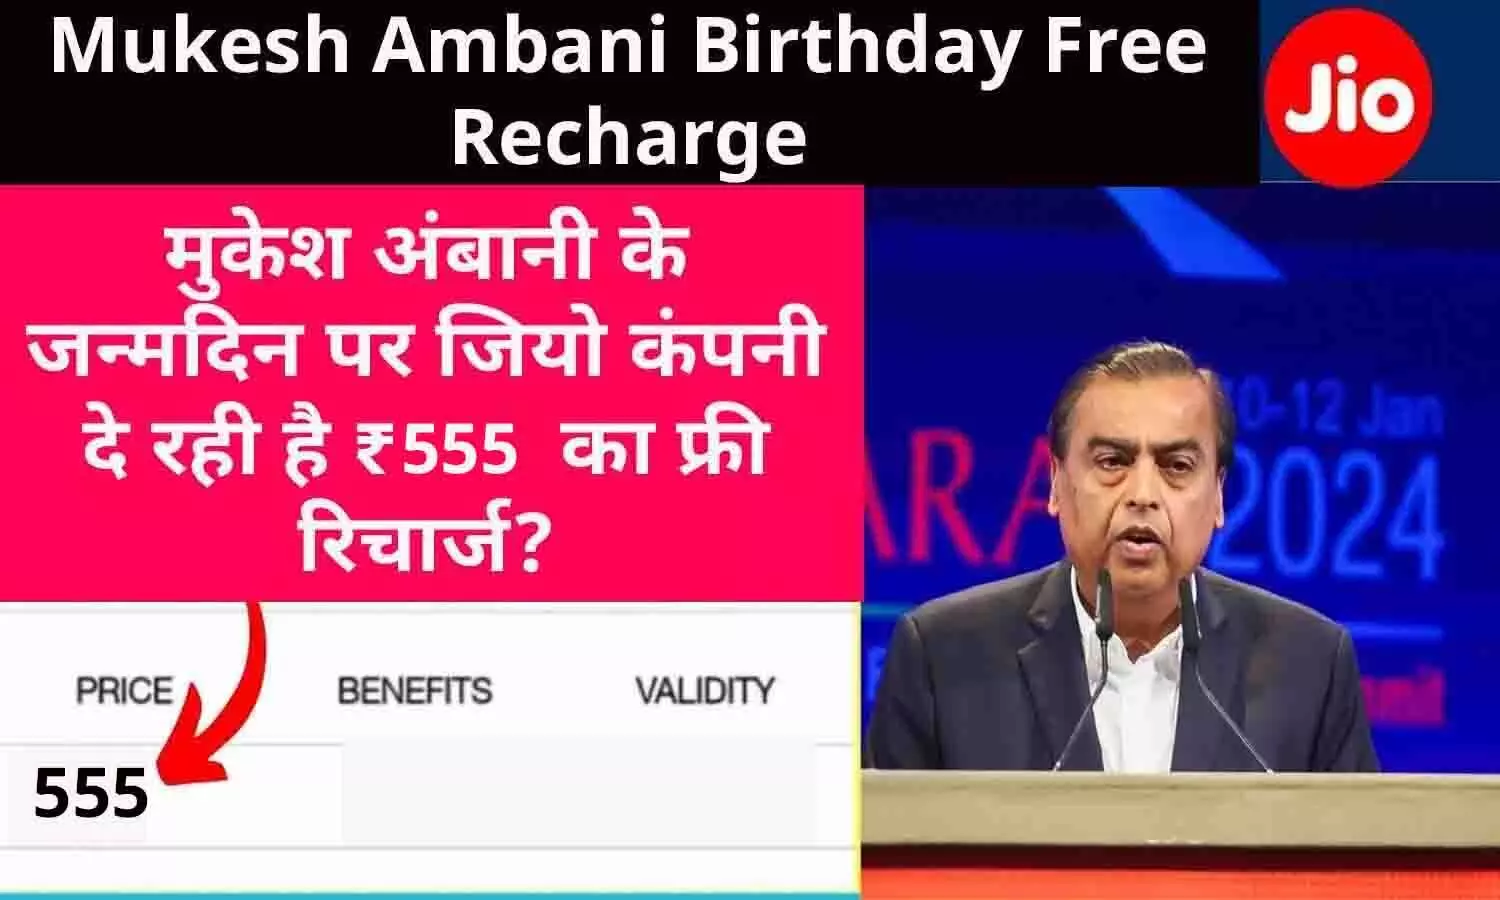 Mukesh Ambani Jio Free Recharge: मुकेश अंबानी के जन्मदिन पर फ्री मिल रहा 555 रुपये वाला रिलायंस जियो रिचार्ज, जानें वॉट्सऐप मेसेज की सच्चाई